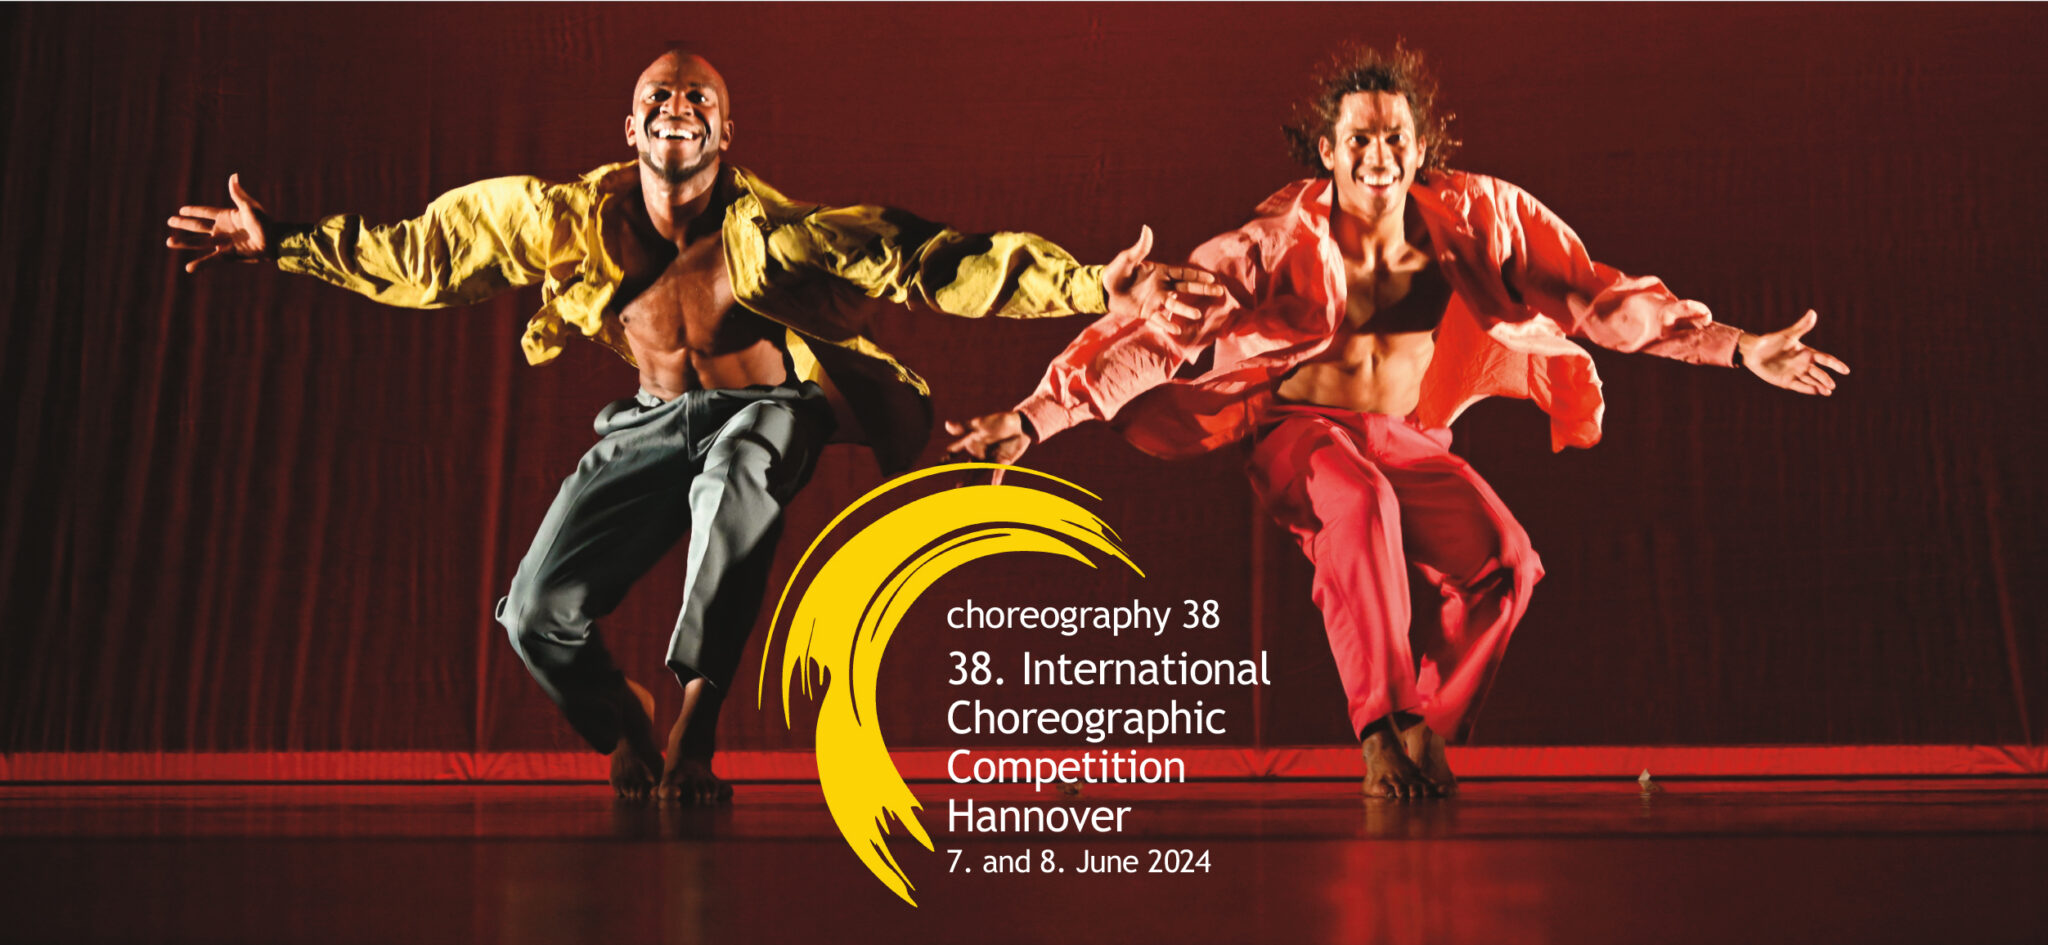 Pildil on kaks tantsivat meest, kes vaatavad kaamerasse, käed külgedele sirutatud. Pildil on kirjas "38. International Choreographic Competition Hannover 7. and 8. June 2024".